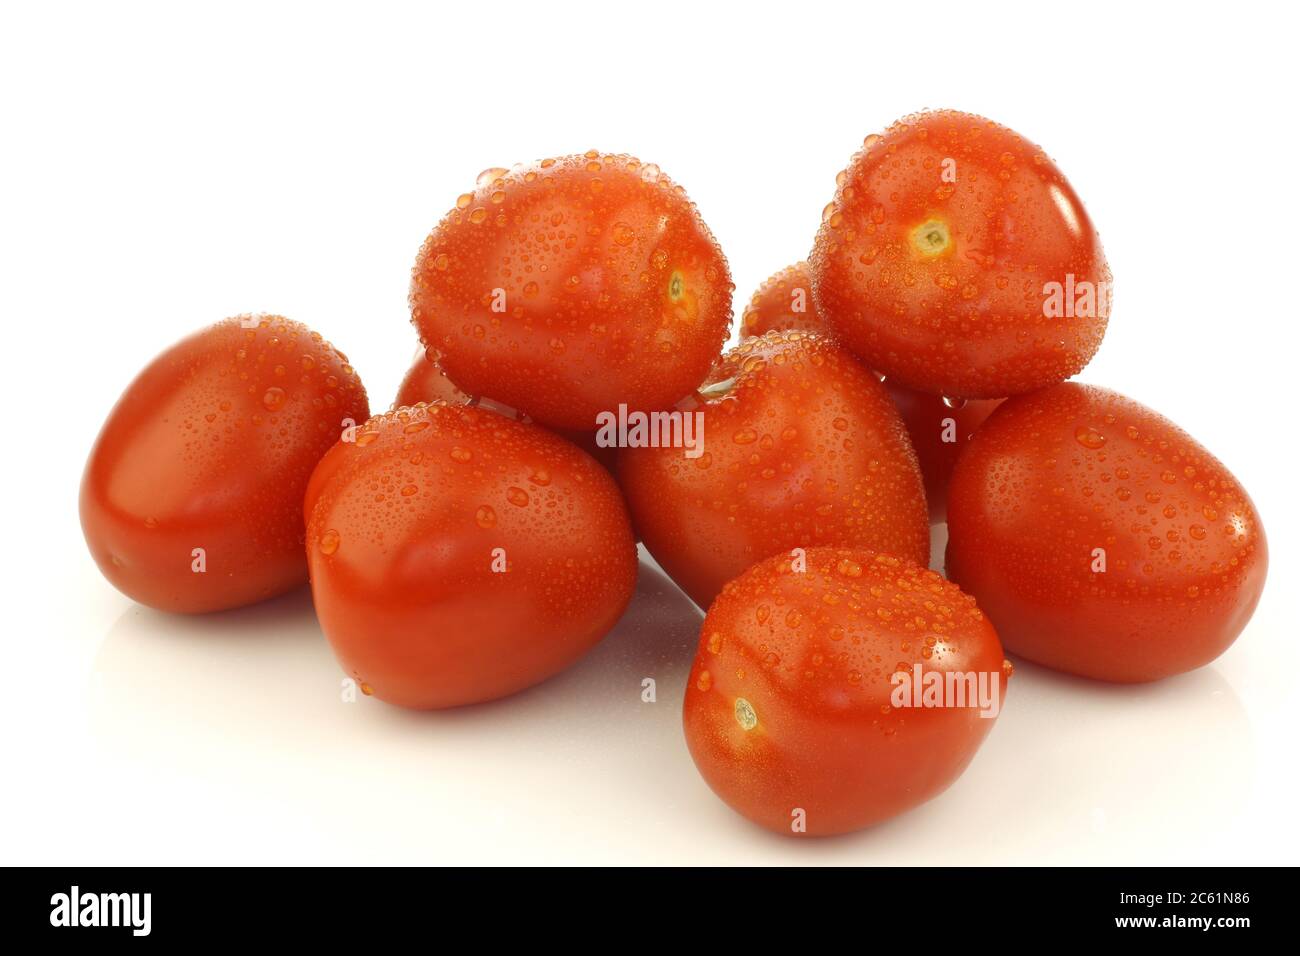 quatre tomates prune italiennes fraîches et colorées sur fond blanc Banque D'Images